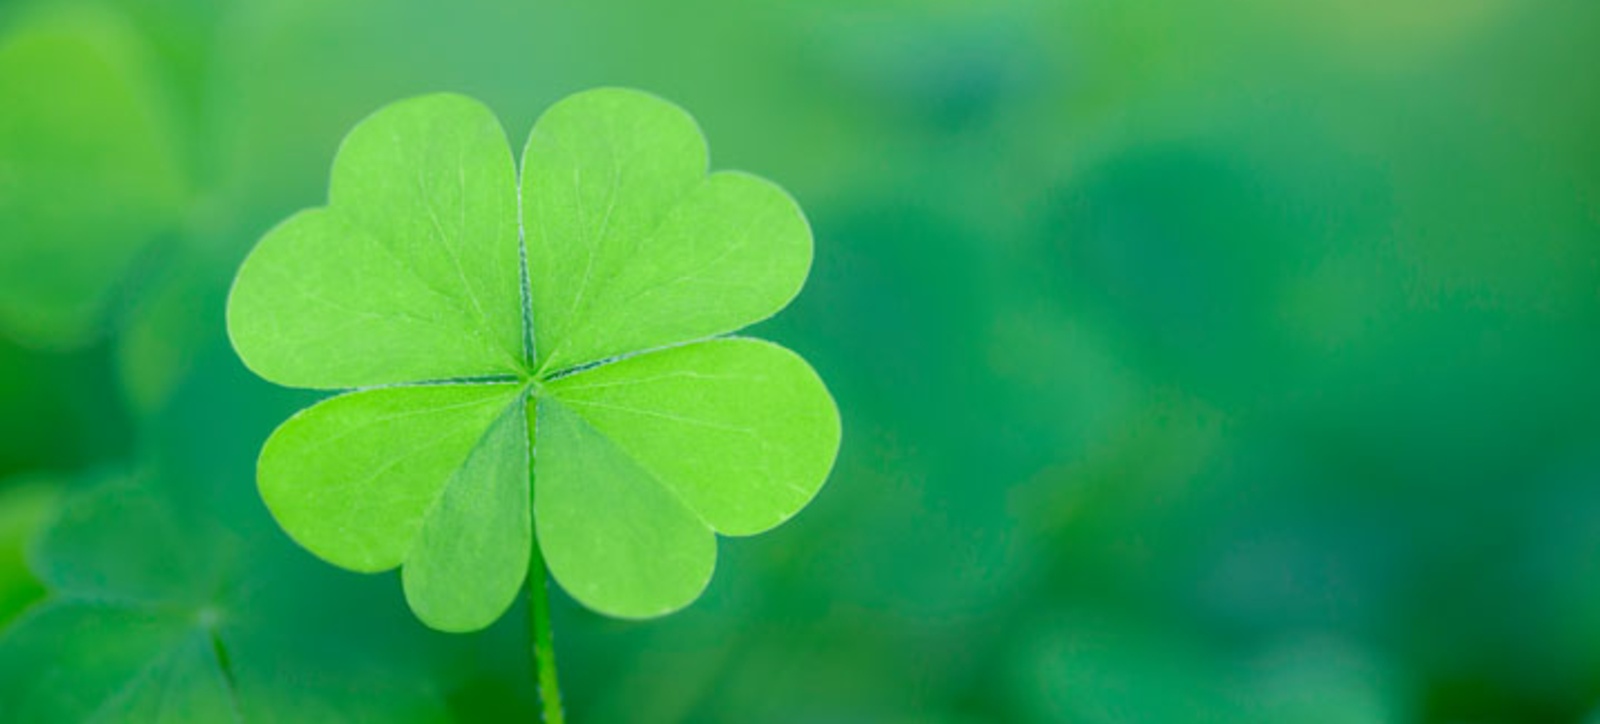 Four leaf clover depicting luck